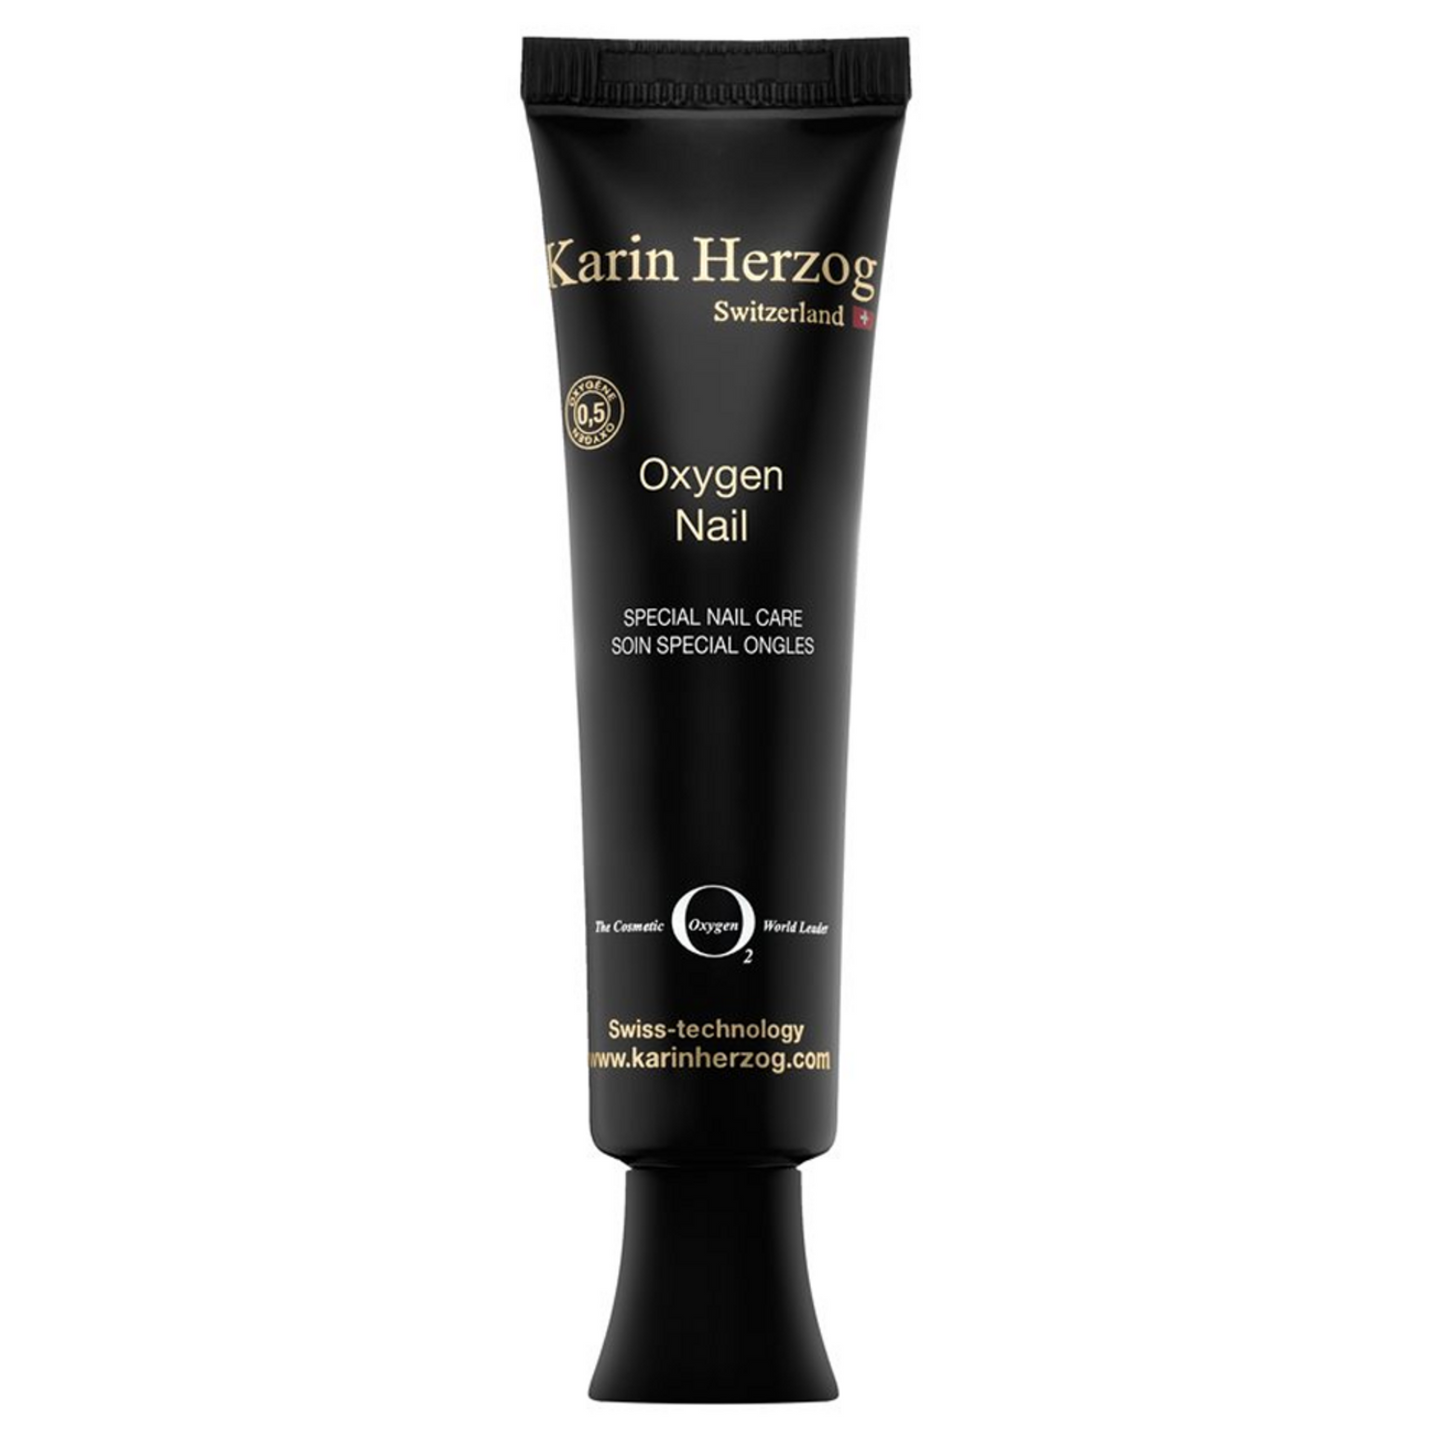 Karin Herzog Hand and Nail Cream Oxygen 0.5%